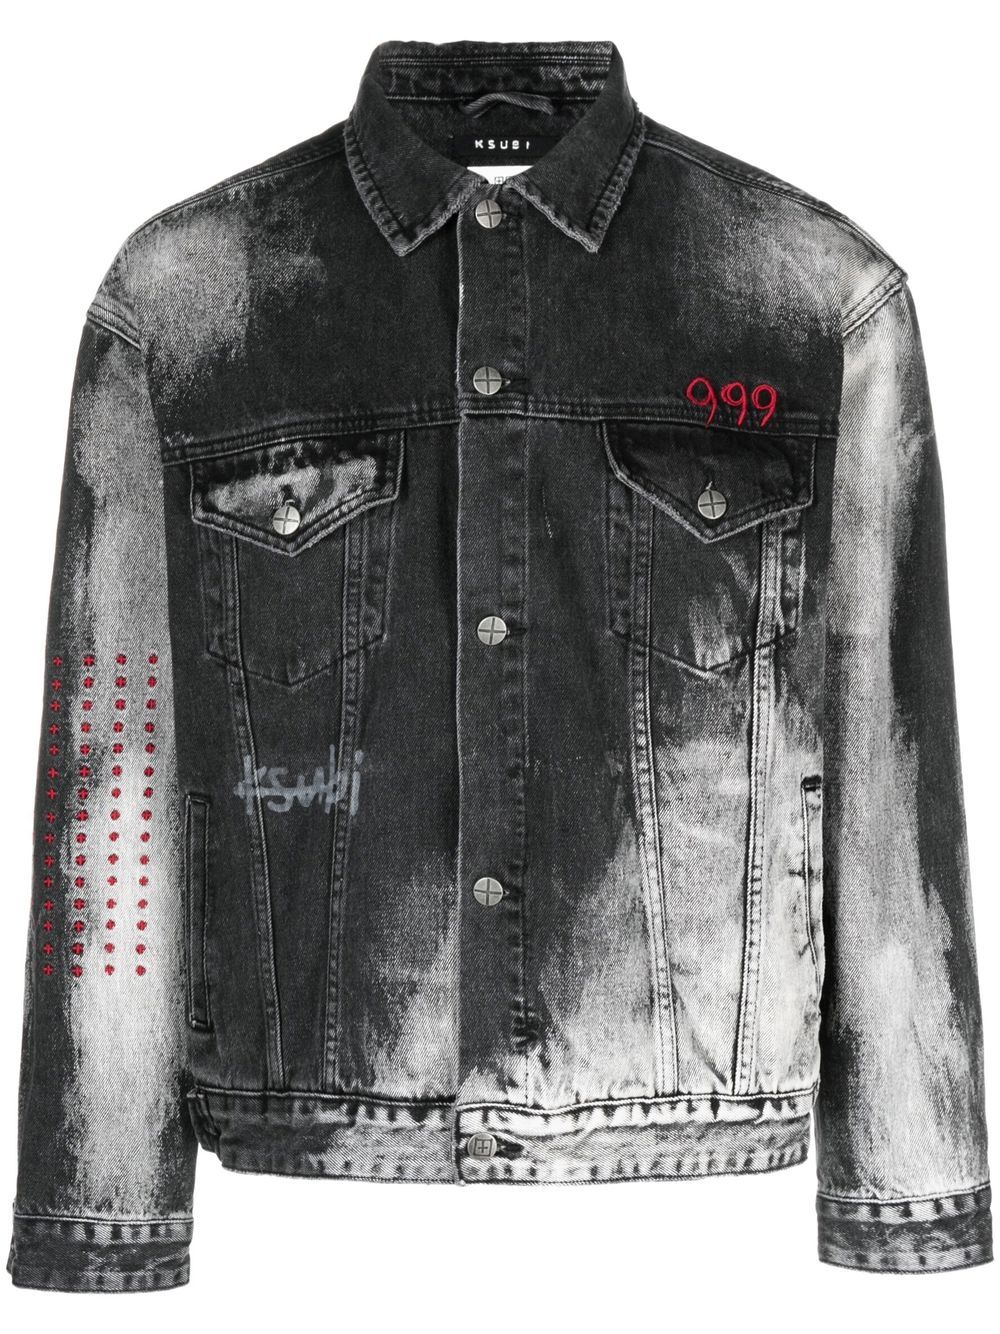 Celebrity Jacket Collection : Juice Wrld Denim Vest